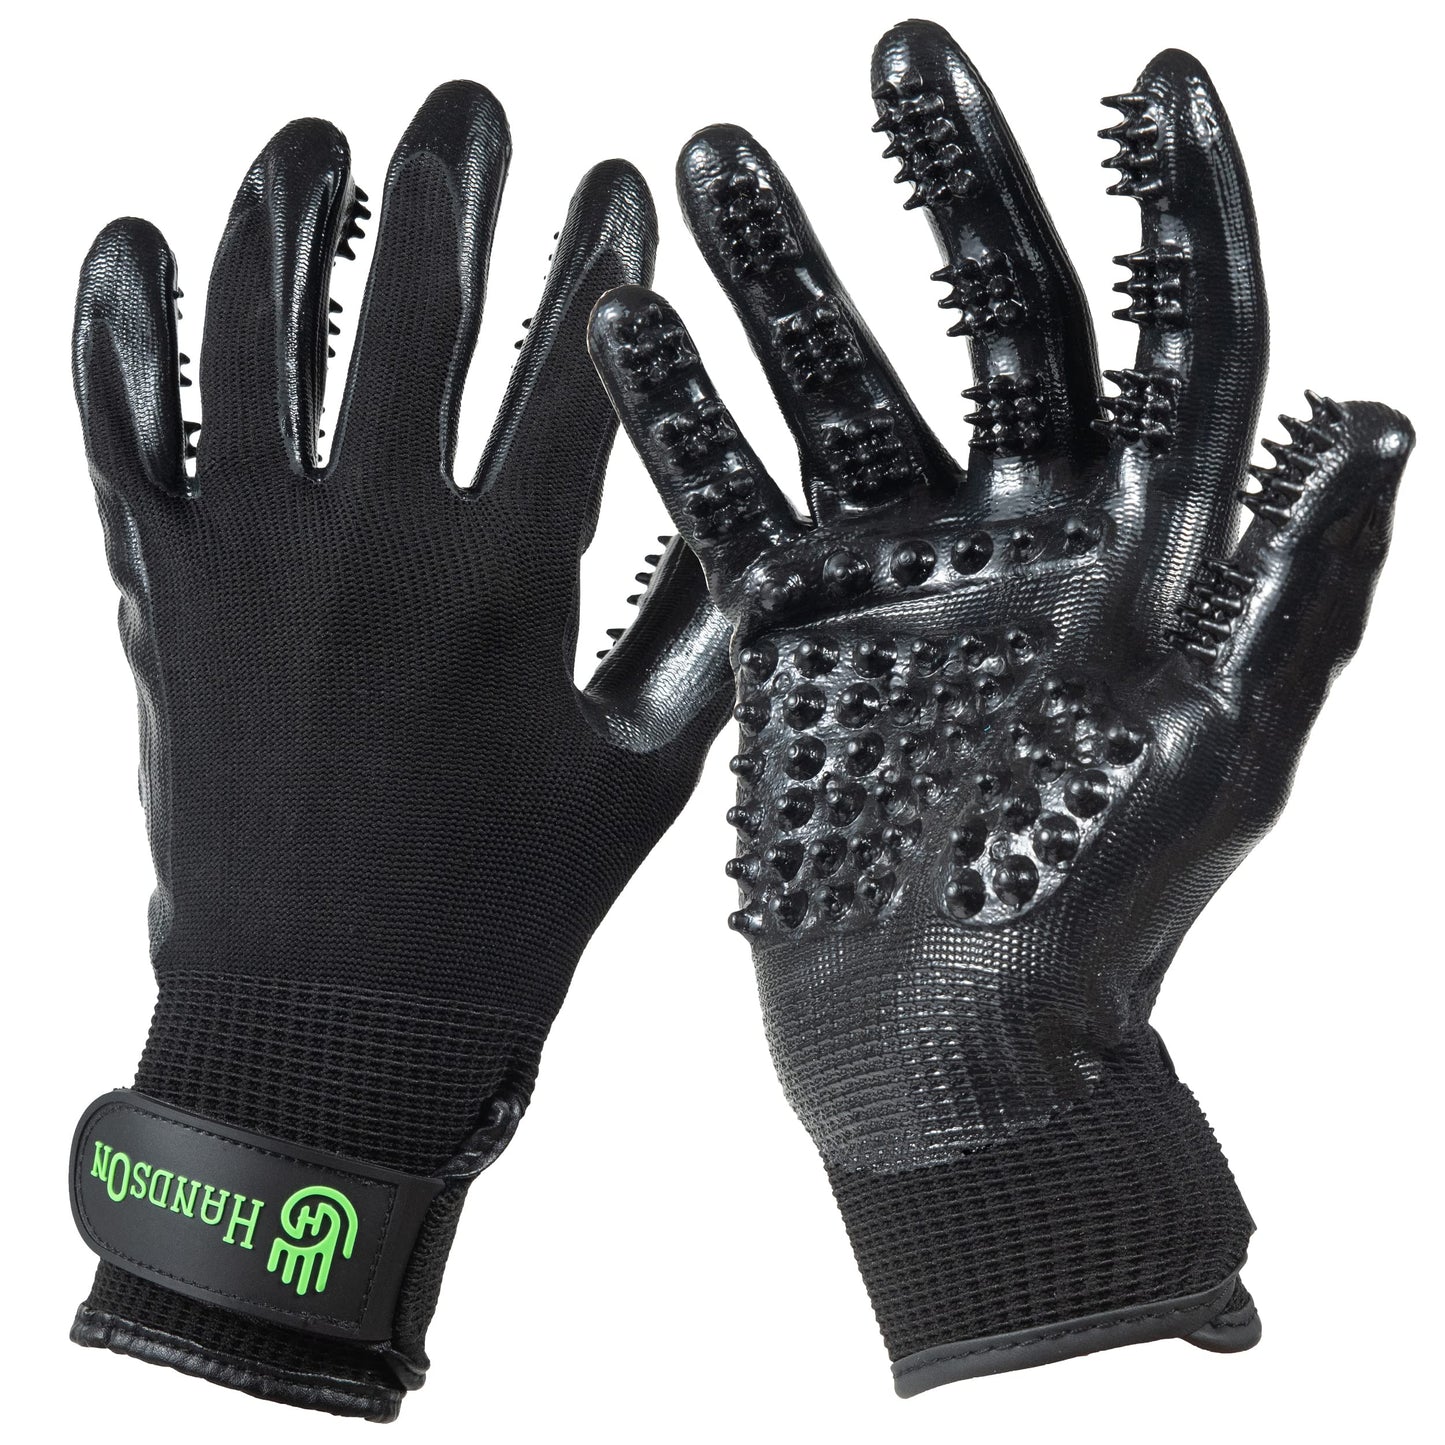 Pet Grooming Gloves - Medium, Black